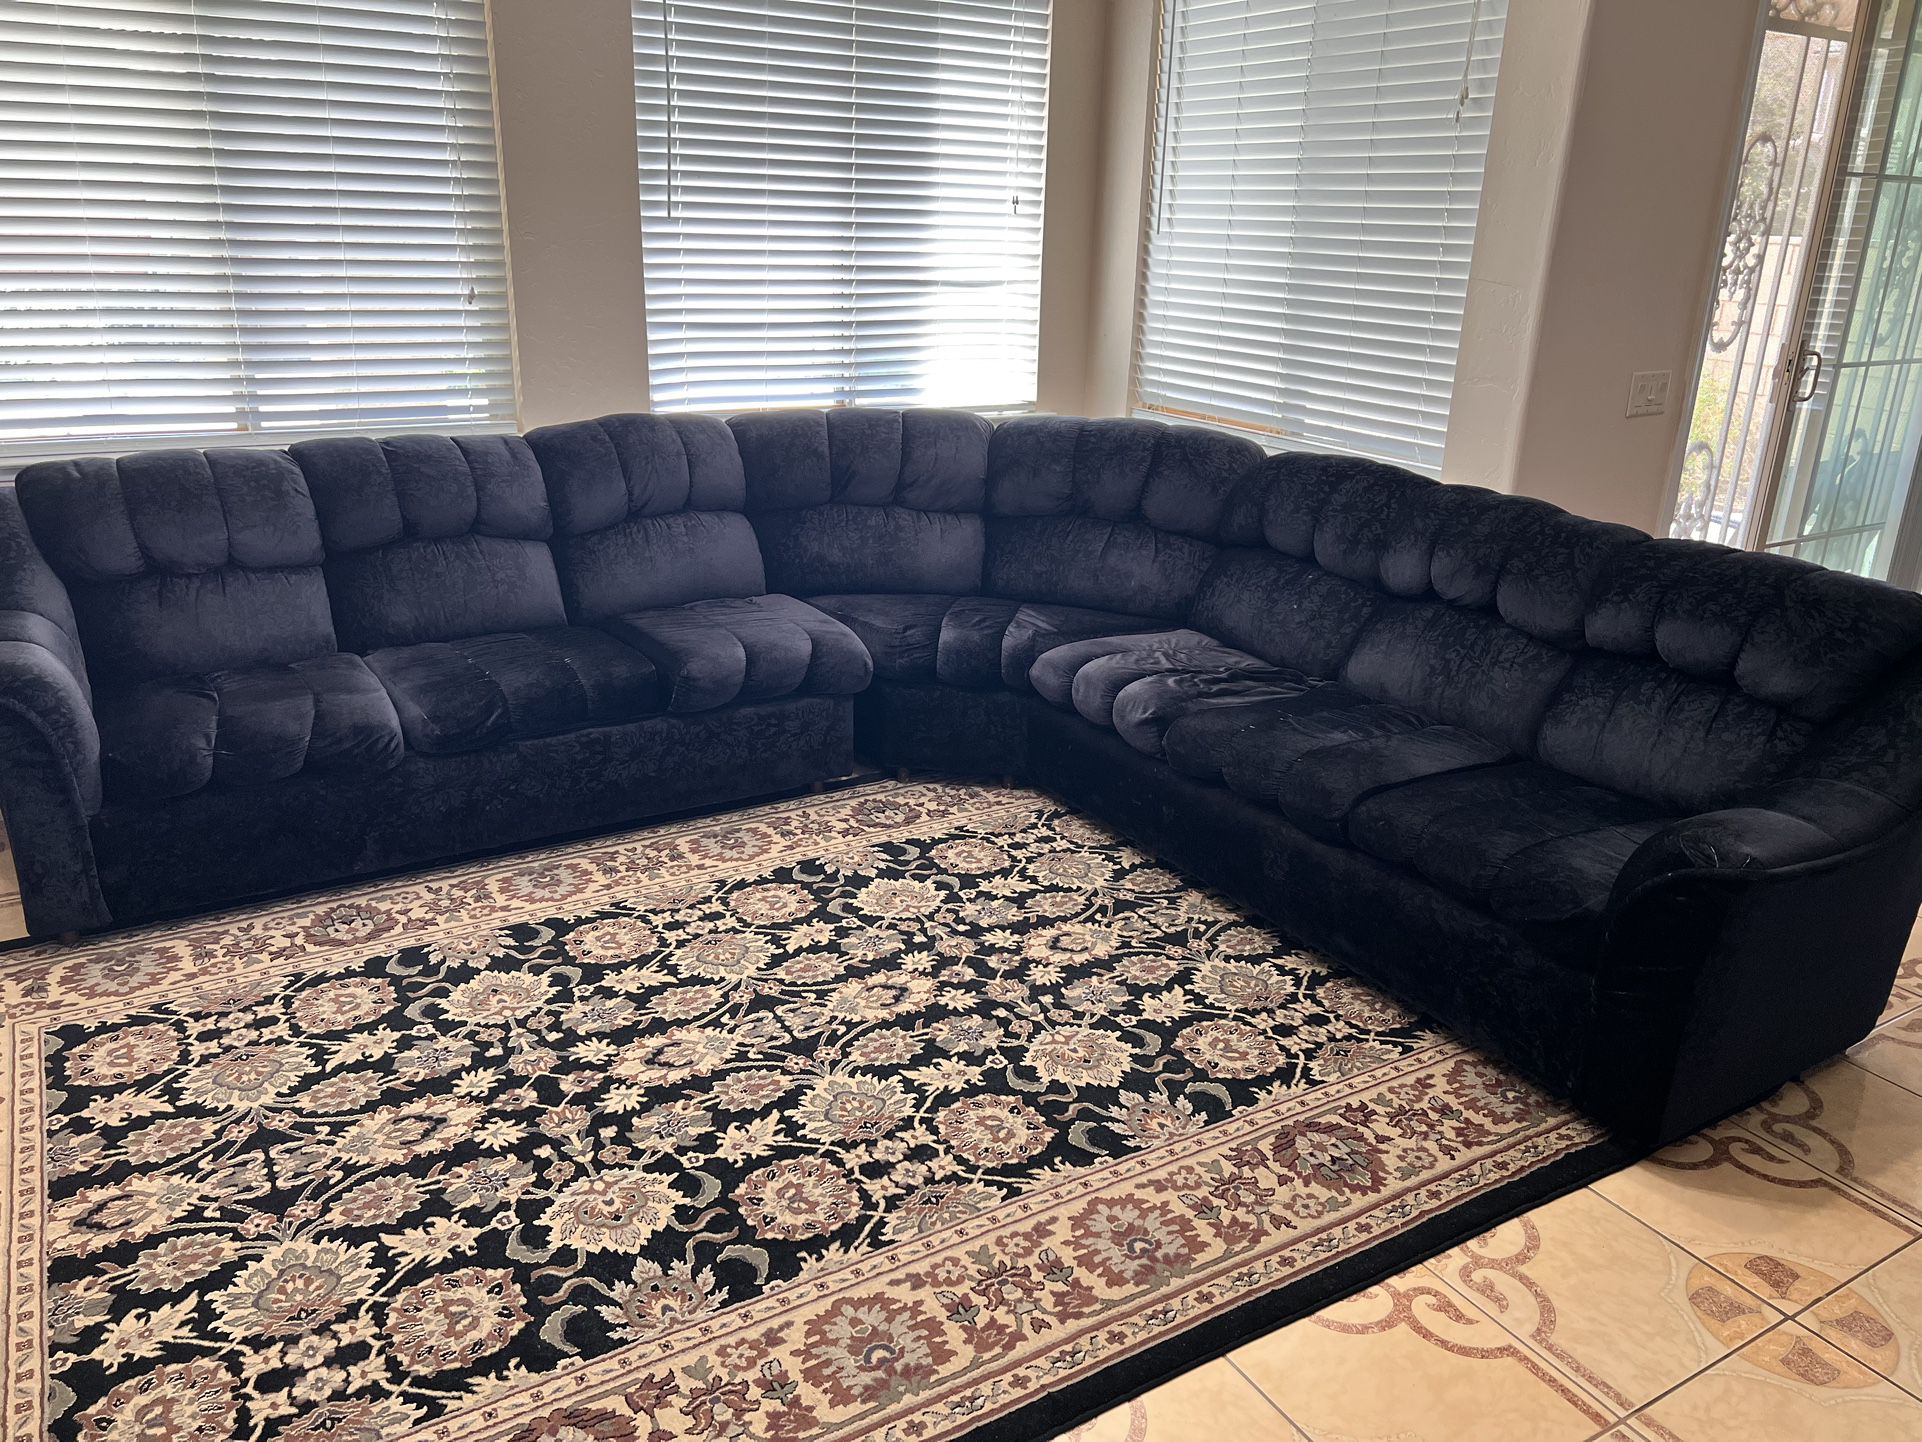 Sectional Sofa and Rug